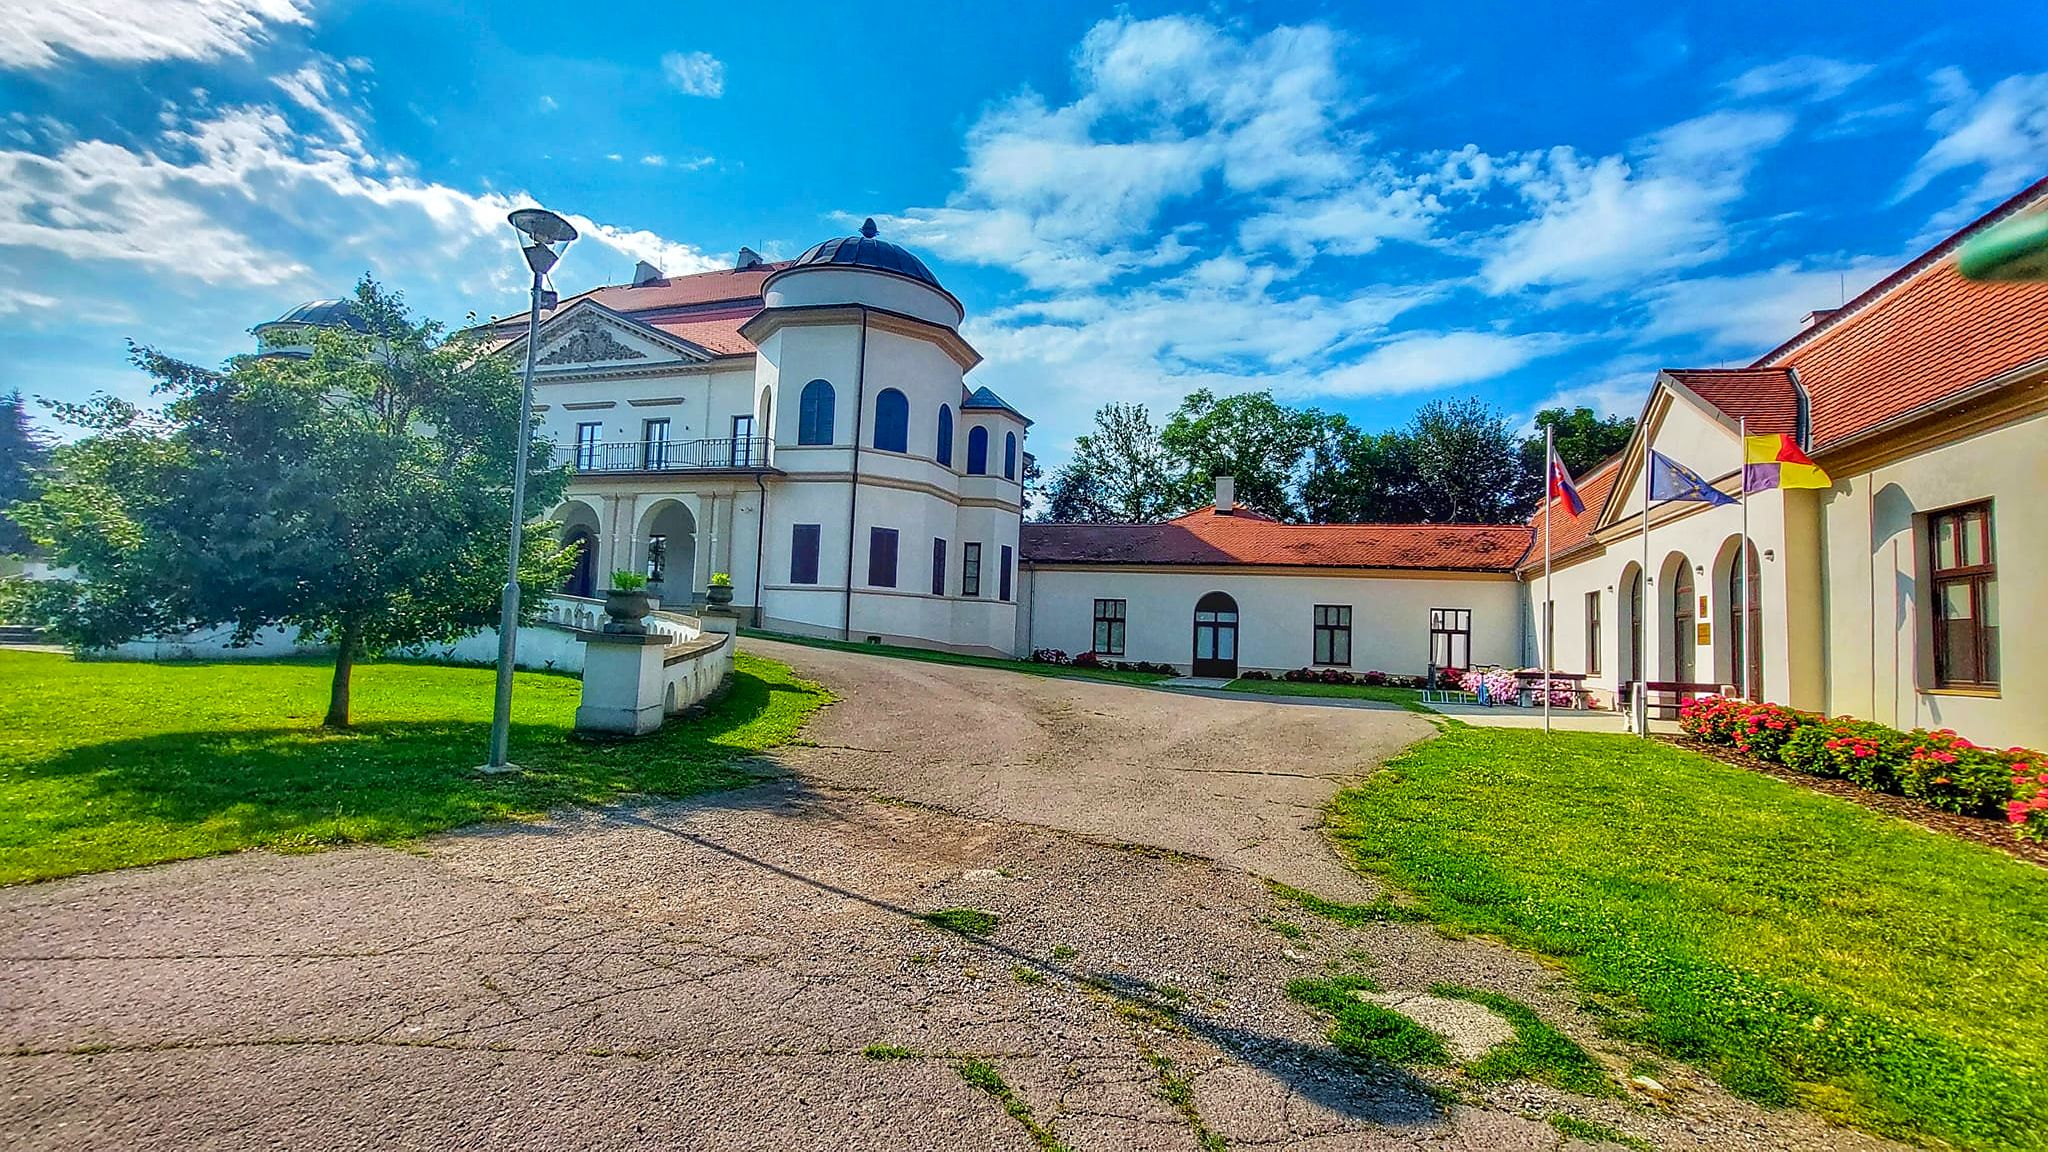 Zemplínske múzeum, Michalovce